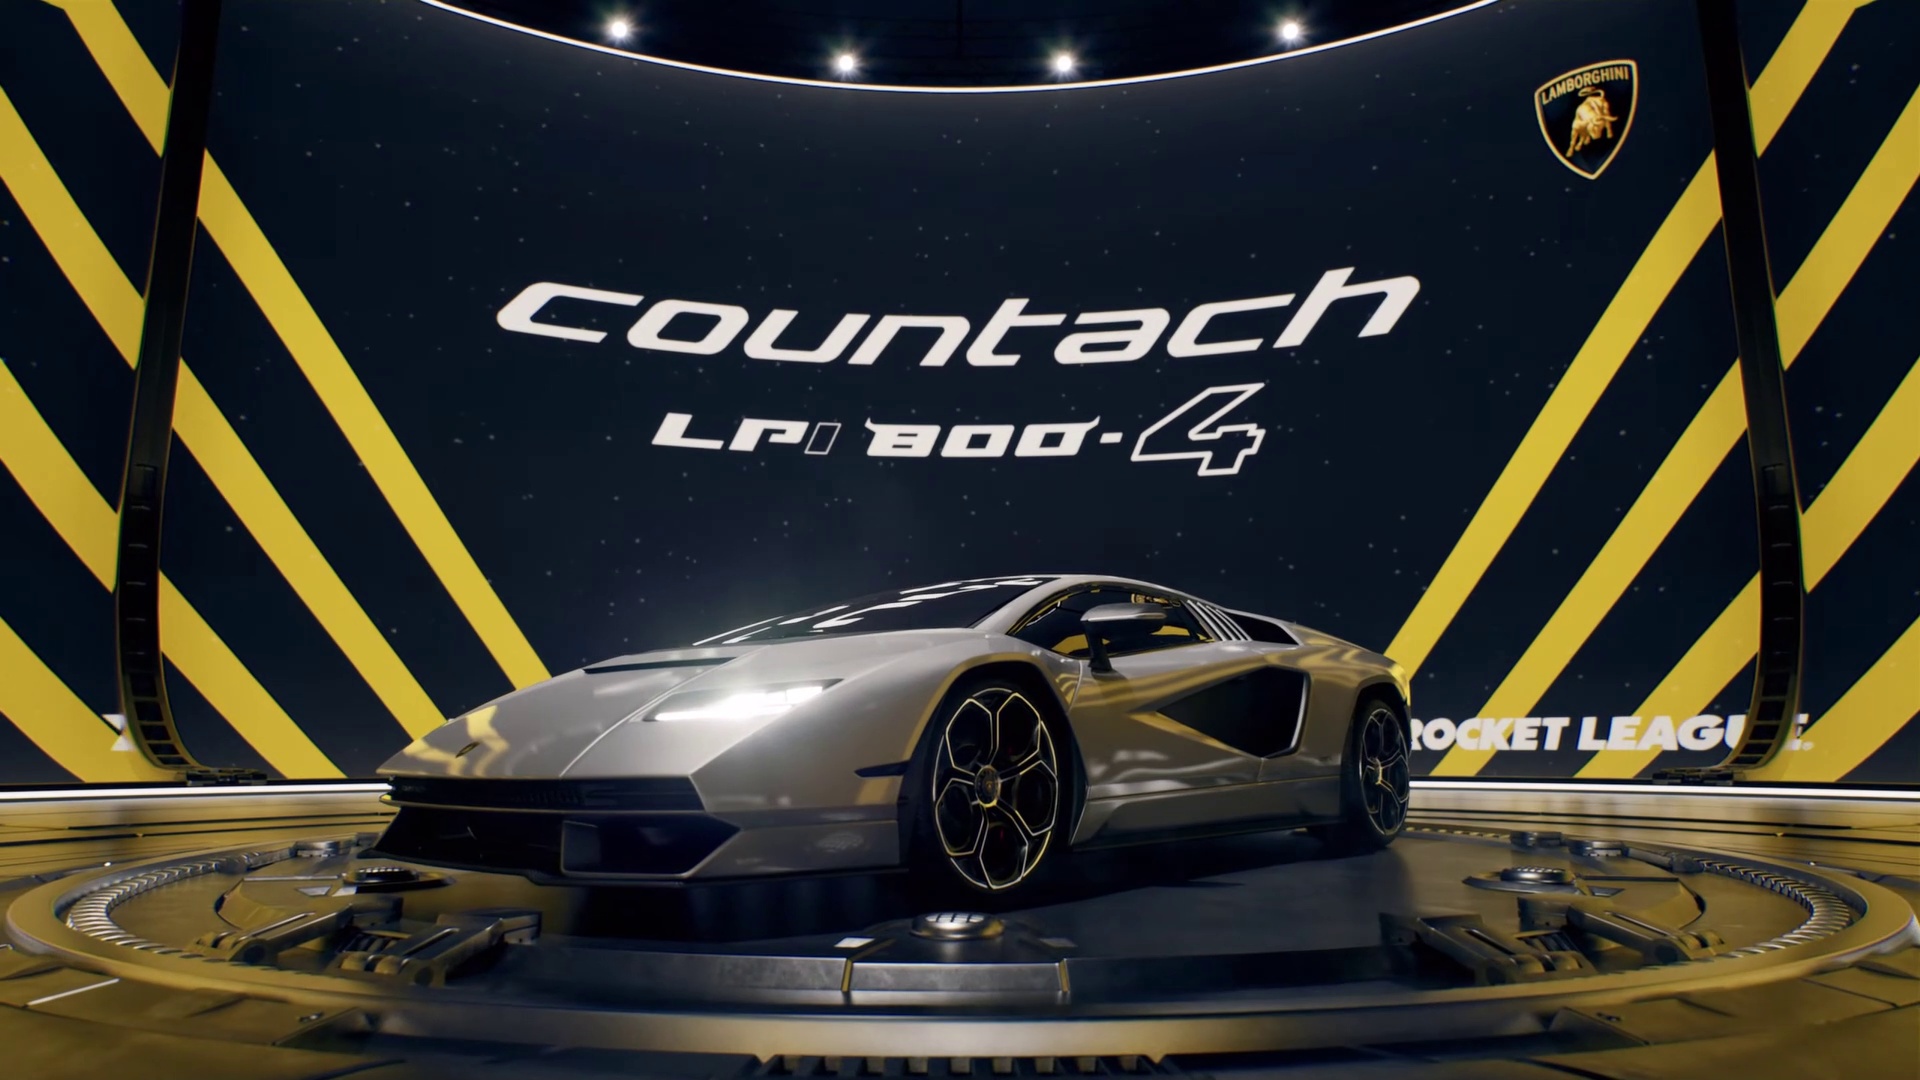 Rocket League | Lamborghini Countach LPI 800-4 Official Trailer